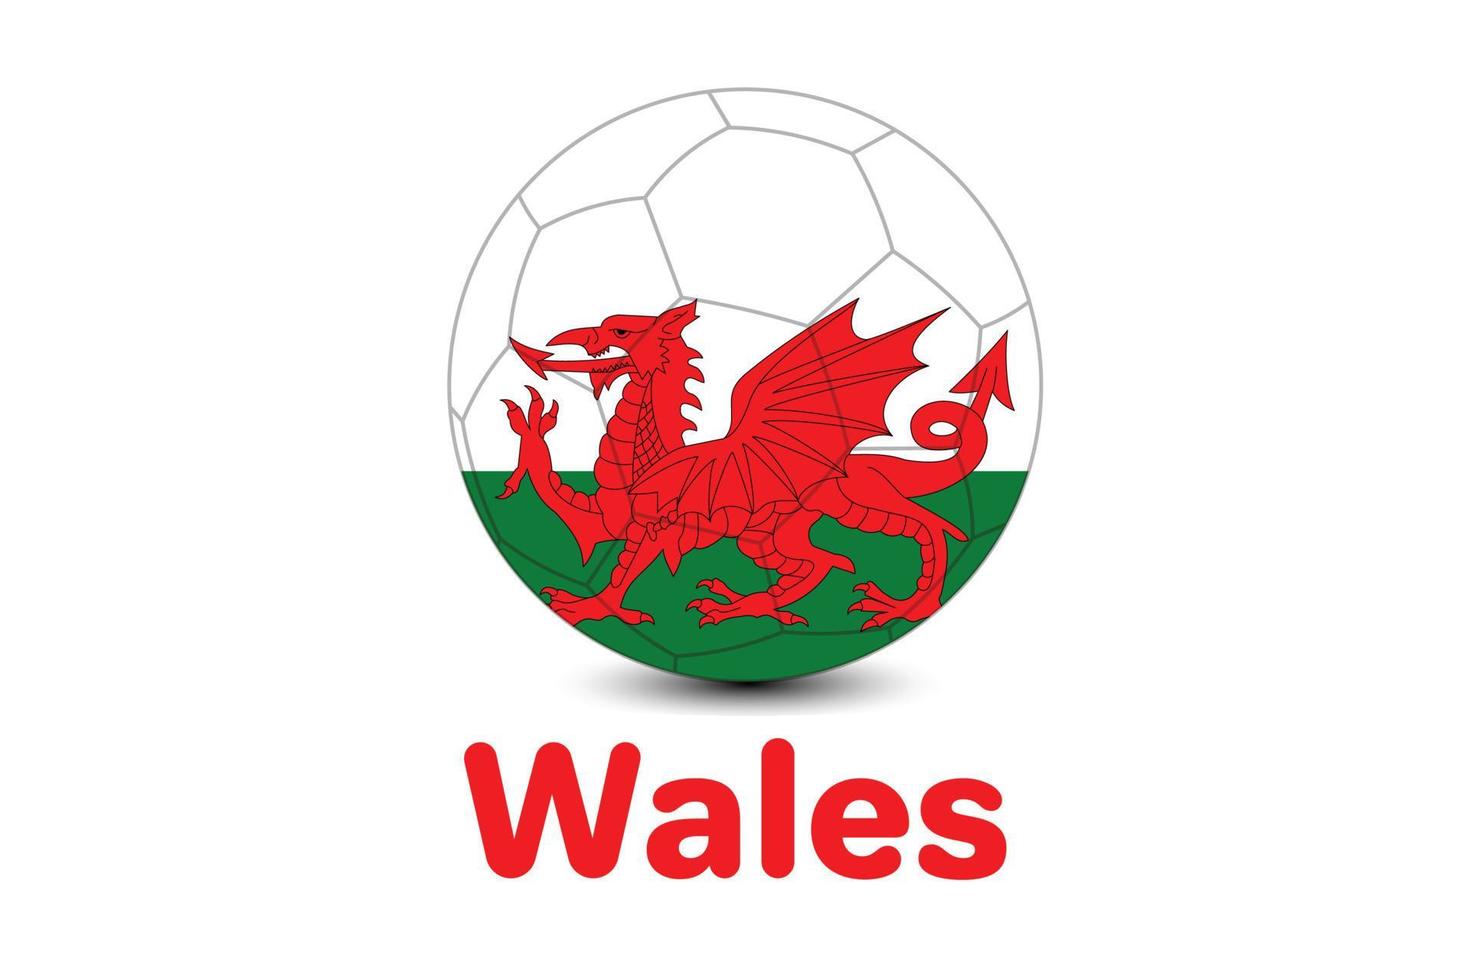 bandera de gales para la copa mundial de la fifa 2022. ilustración de fútbol de la copa mundial de qatar. vector